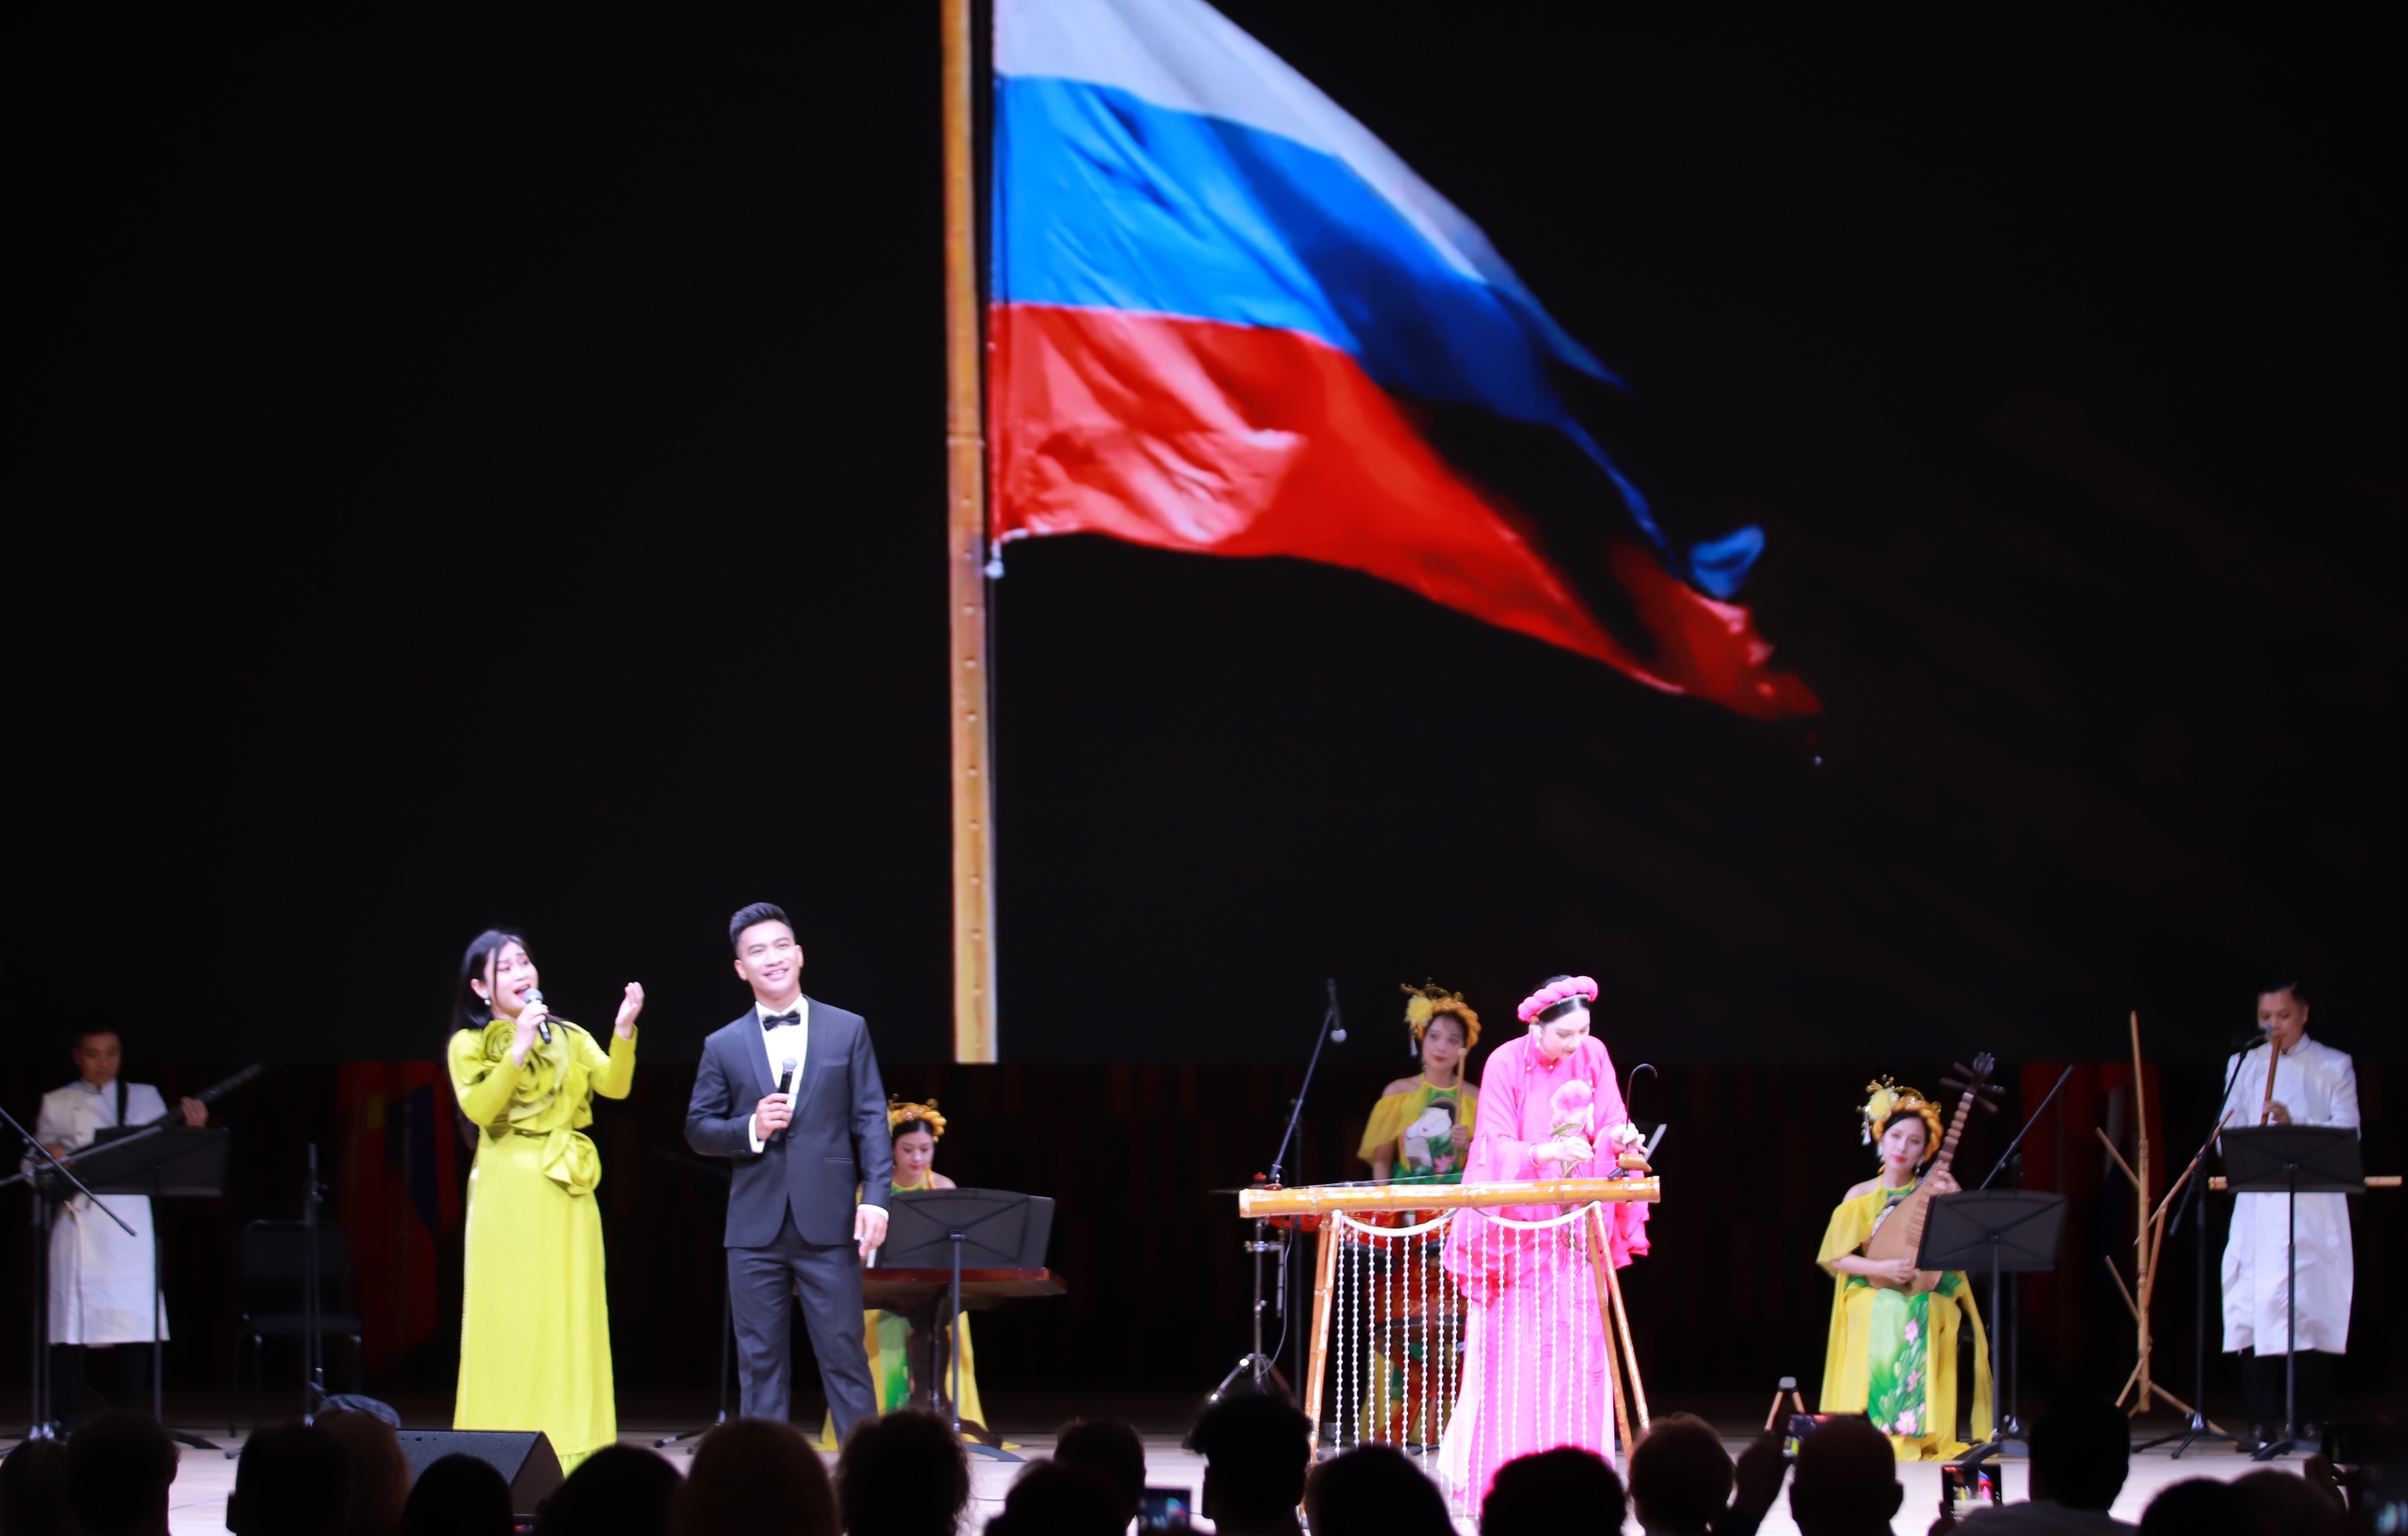 Chùm ảnh: Đặc sắc đêm khai màn Những ngày văn hóa Việt Nam tại Liên bang Nga - Ảnh 18.